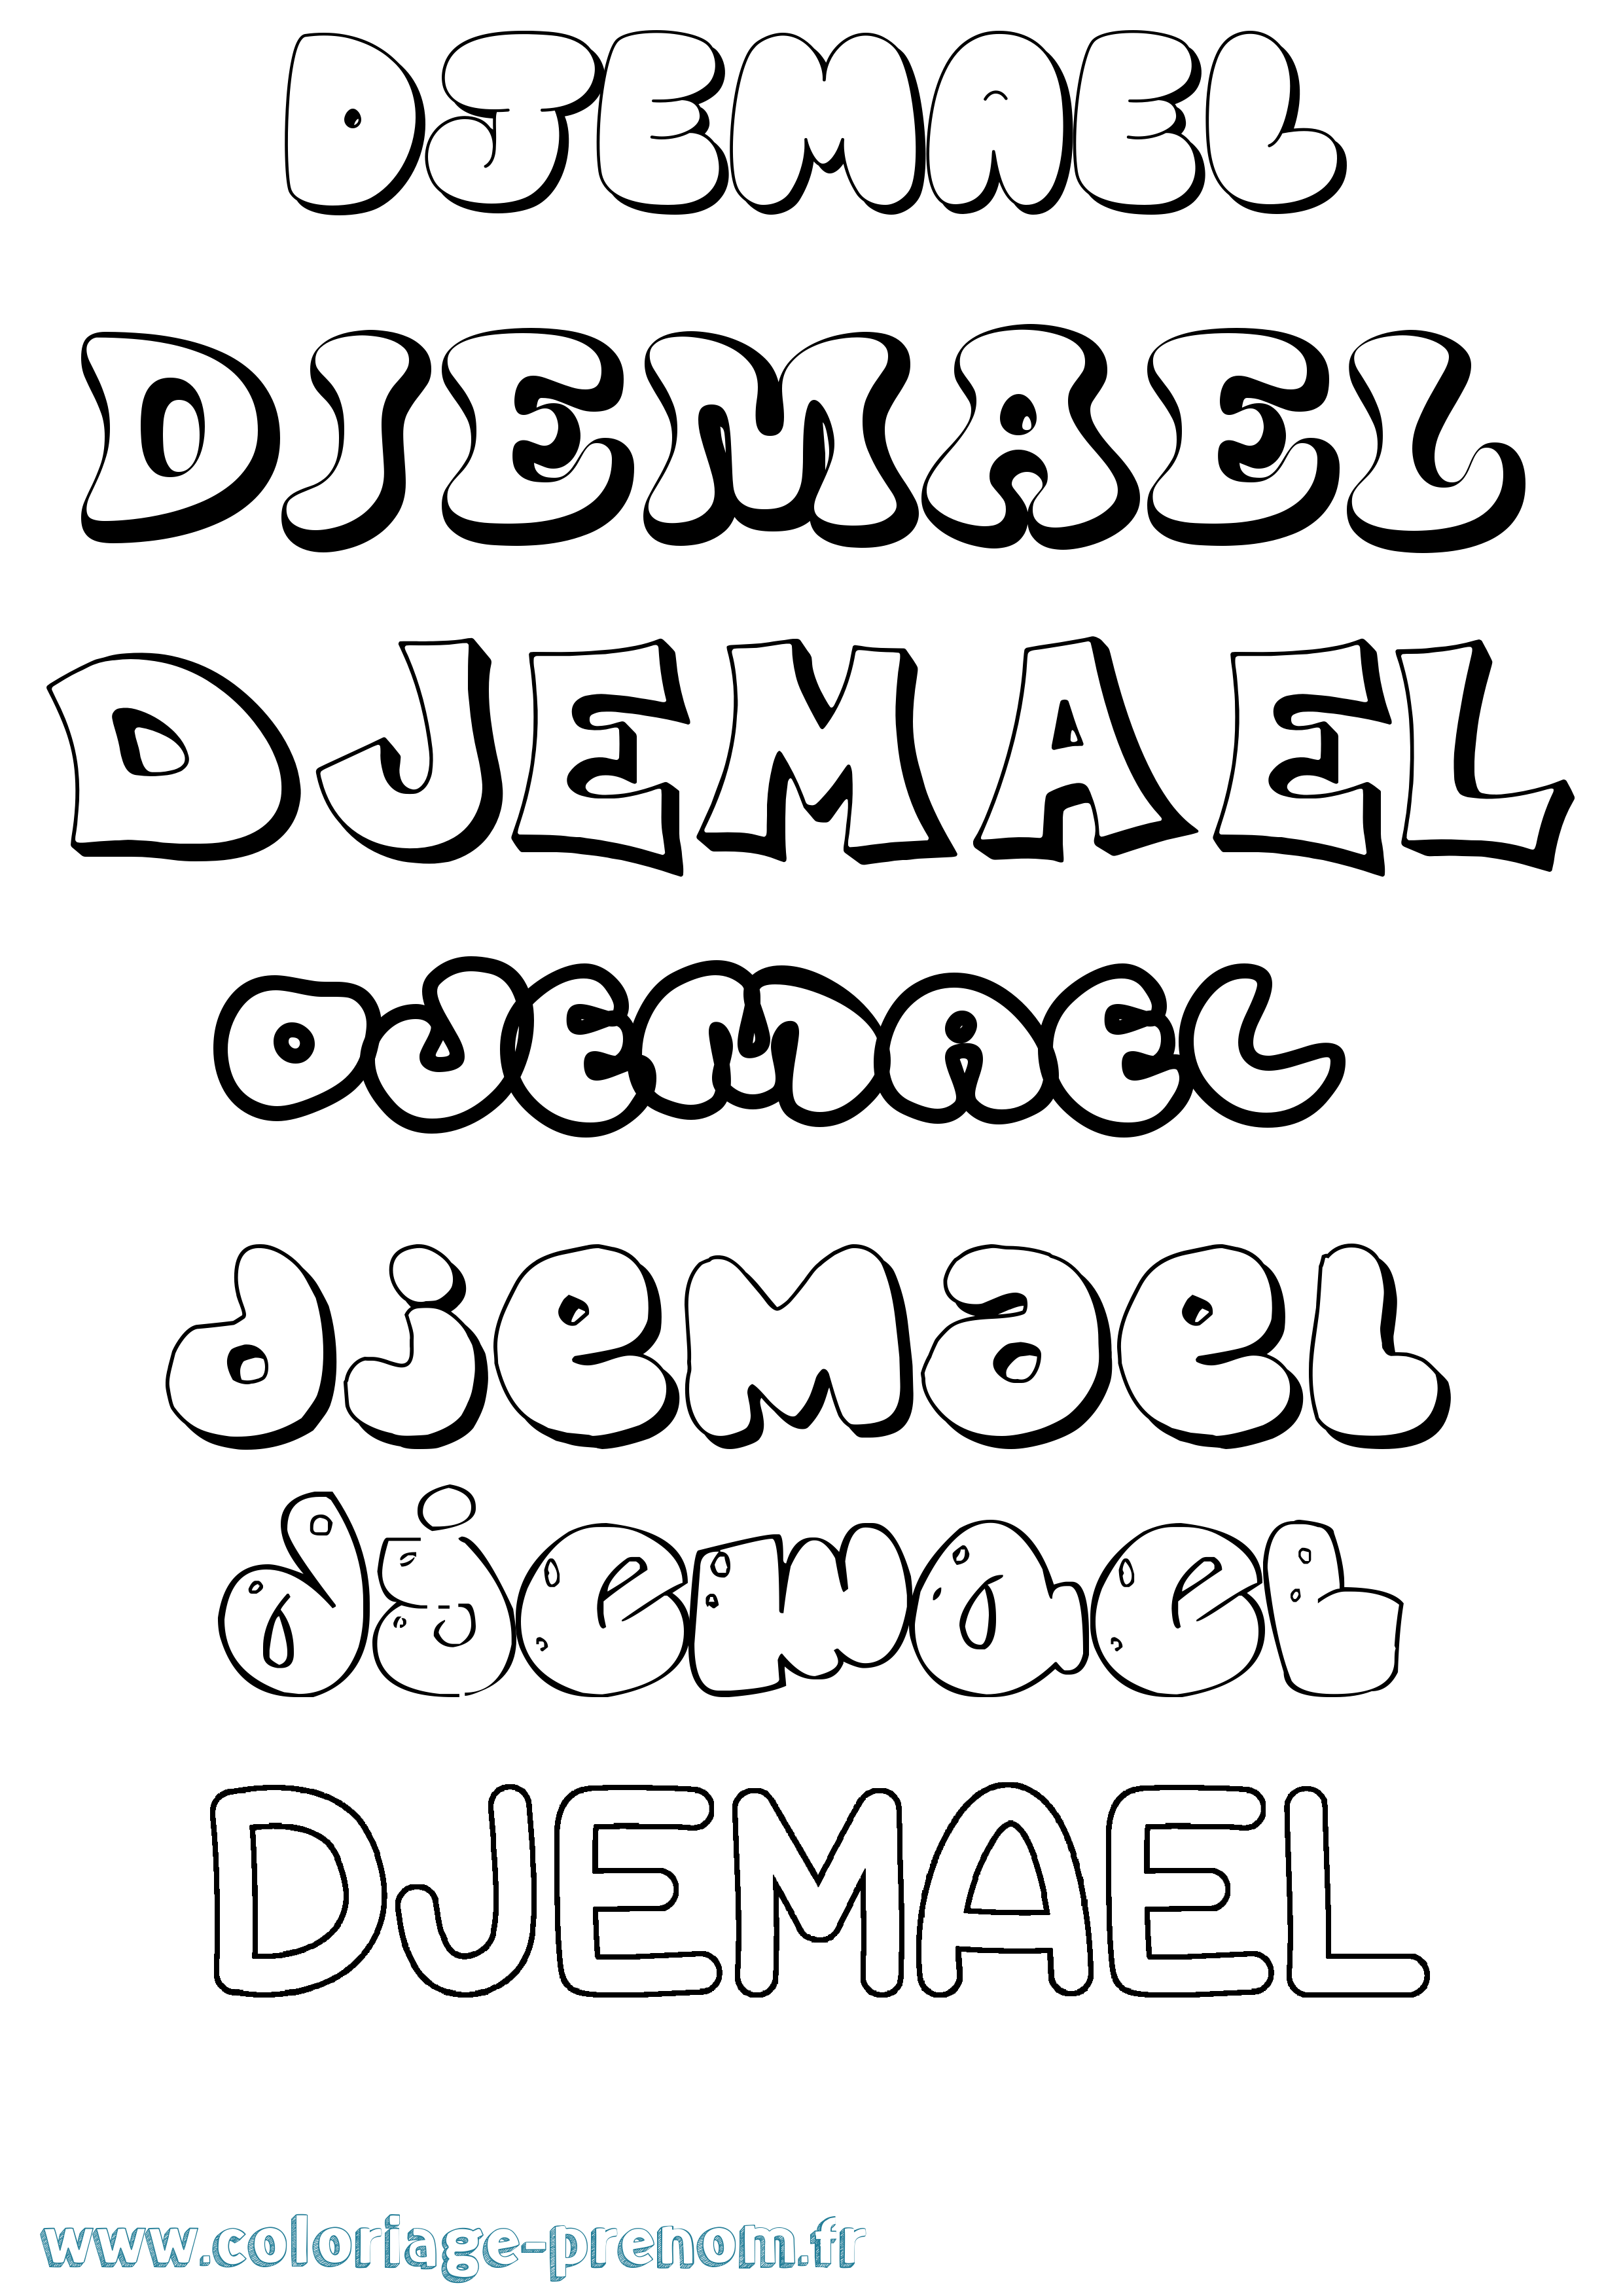 Coloriage prénom Djemael Bubble